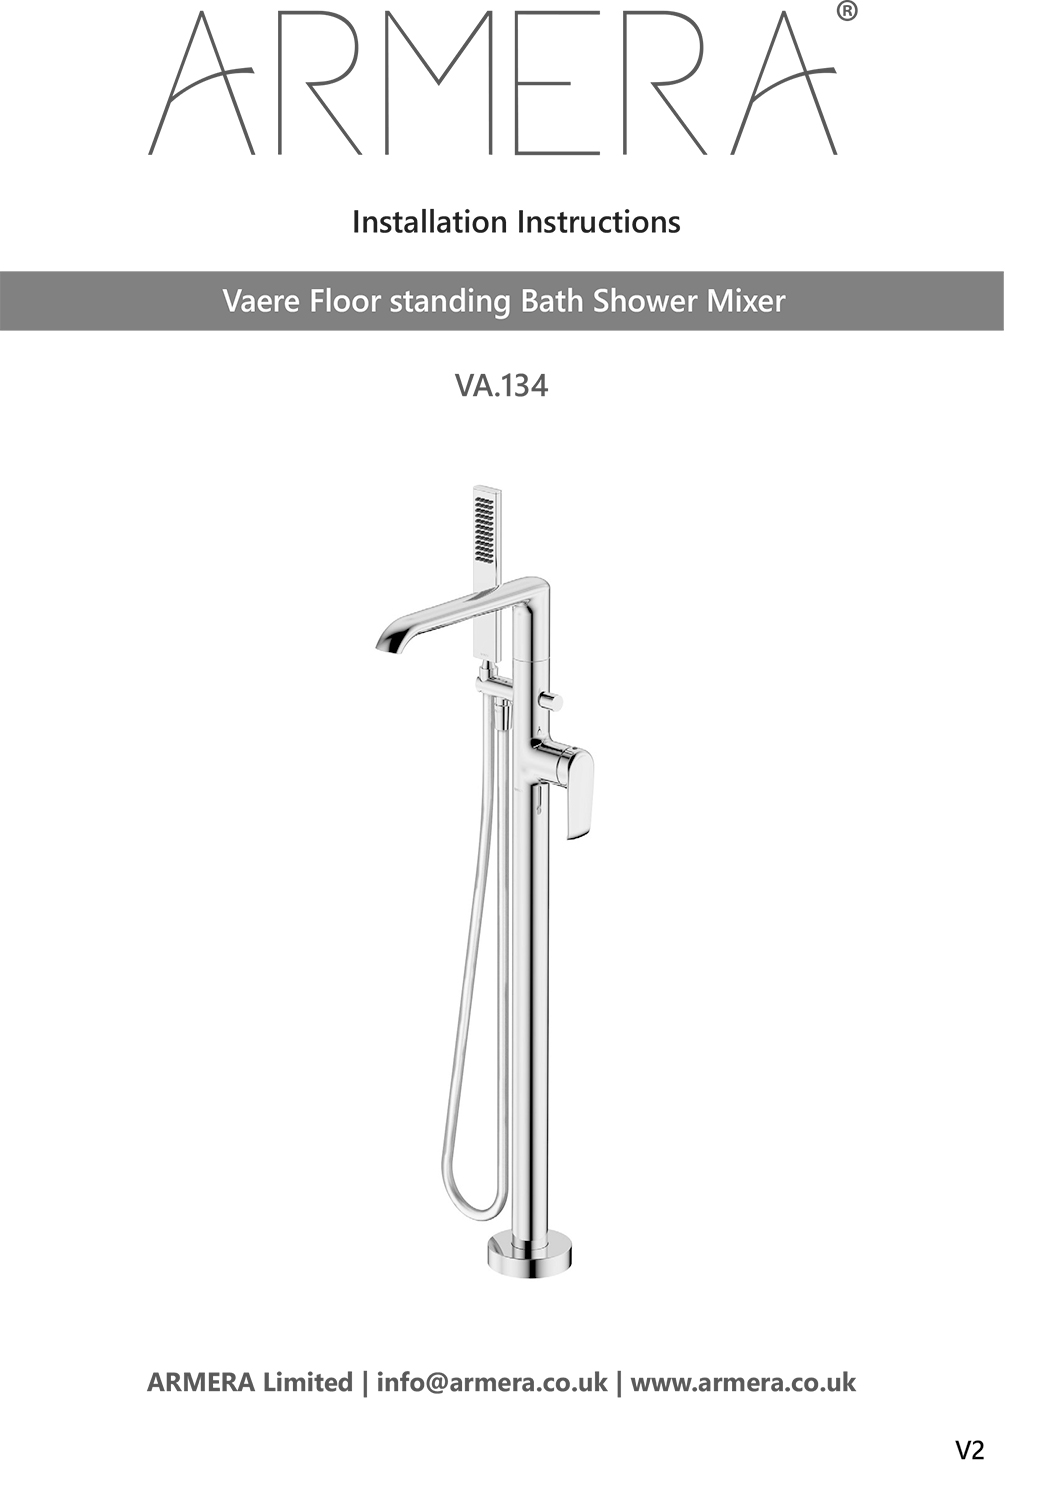 Vaere floor standing bath shower mixer